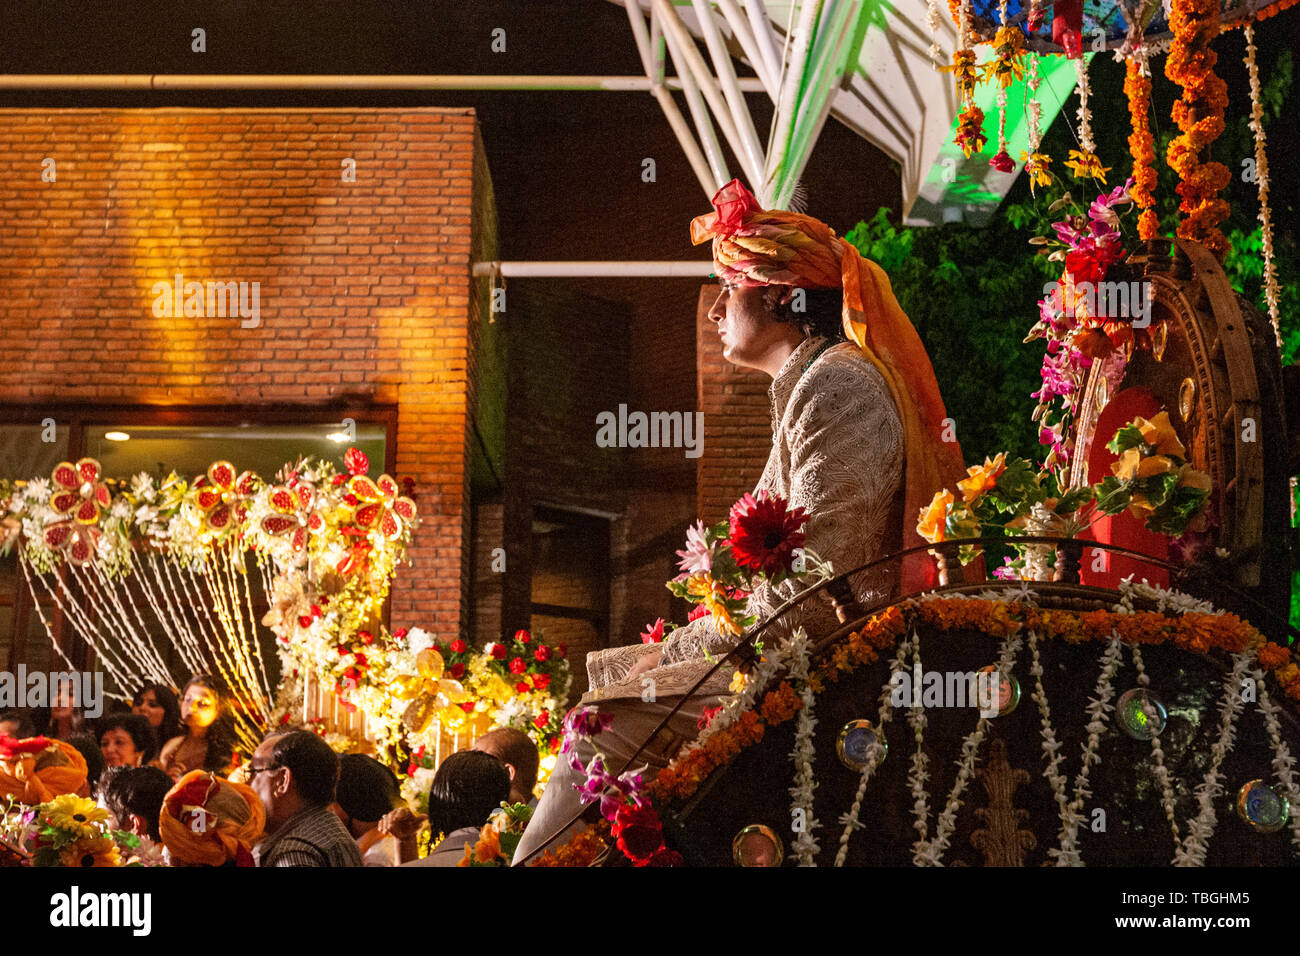 Bräutigam Eingang in einer Pferdekutsche in der indischen Hochzeit Feier in Agra, Uttar Pradesh, Indien Stockfoto